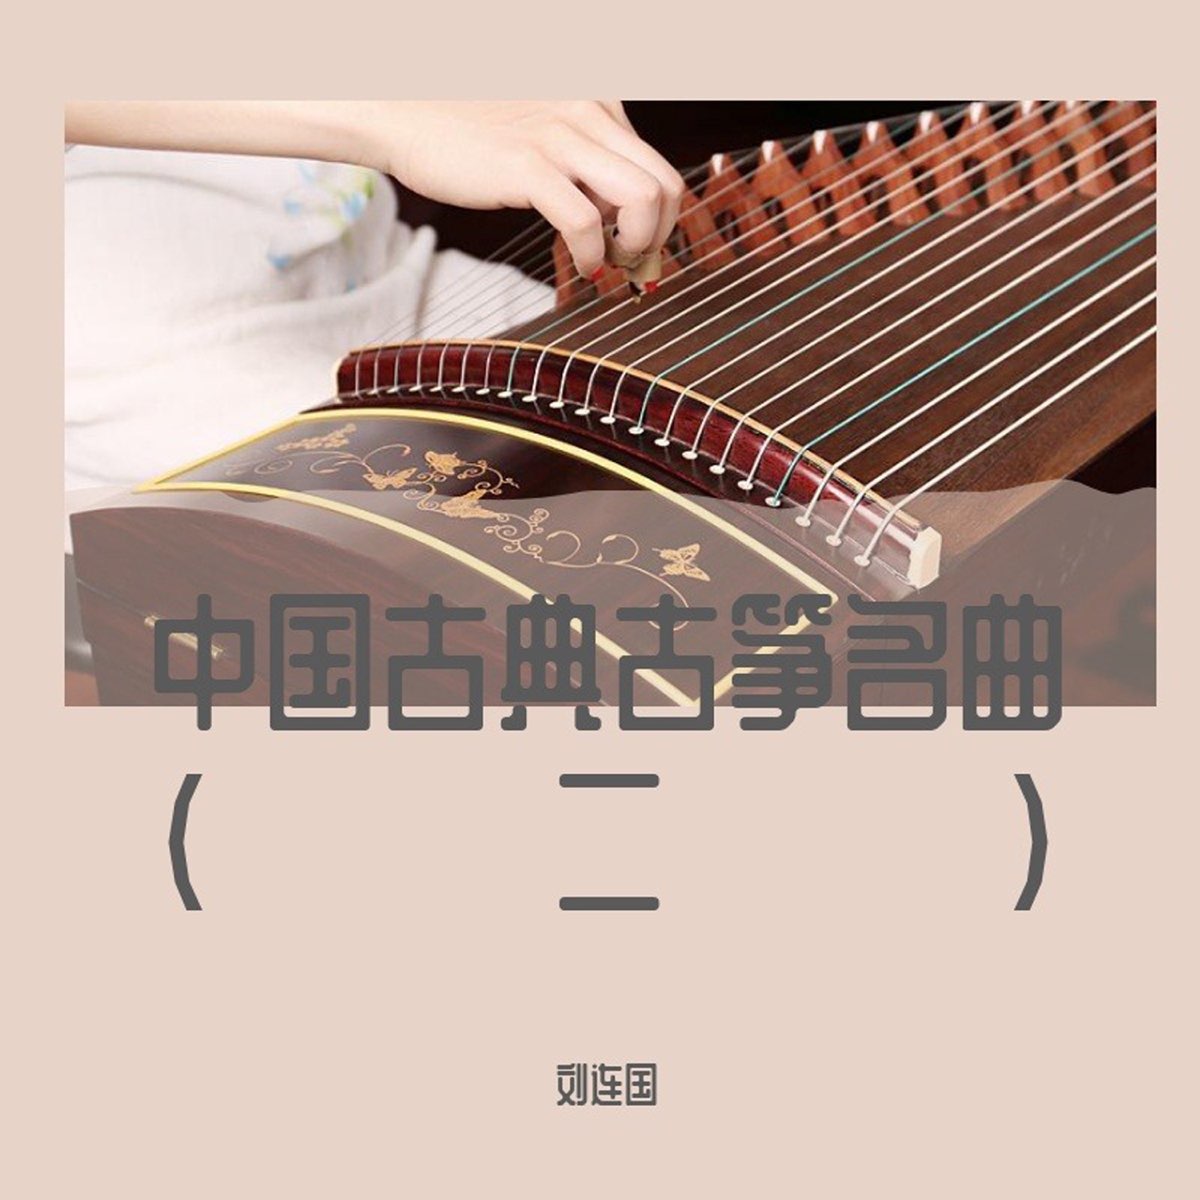 中国のお琴 - 楽器